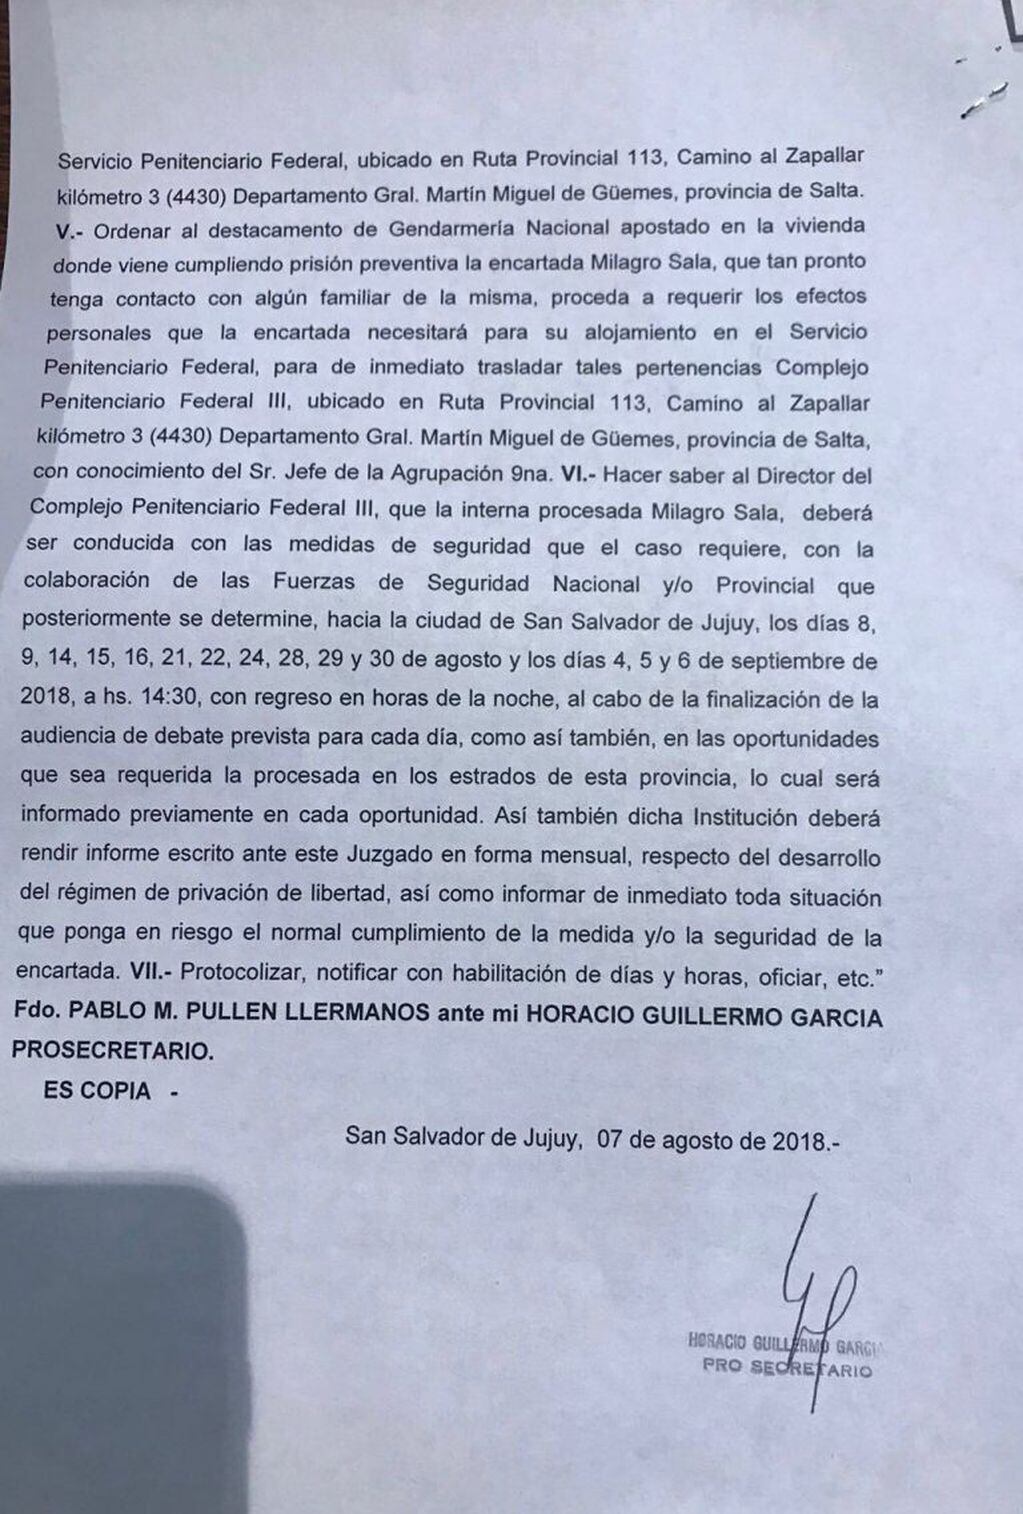 Resolución segunda parte para traslado de Milagro Sala a una cárcel federal en Salta